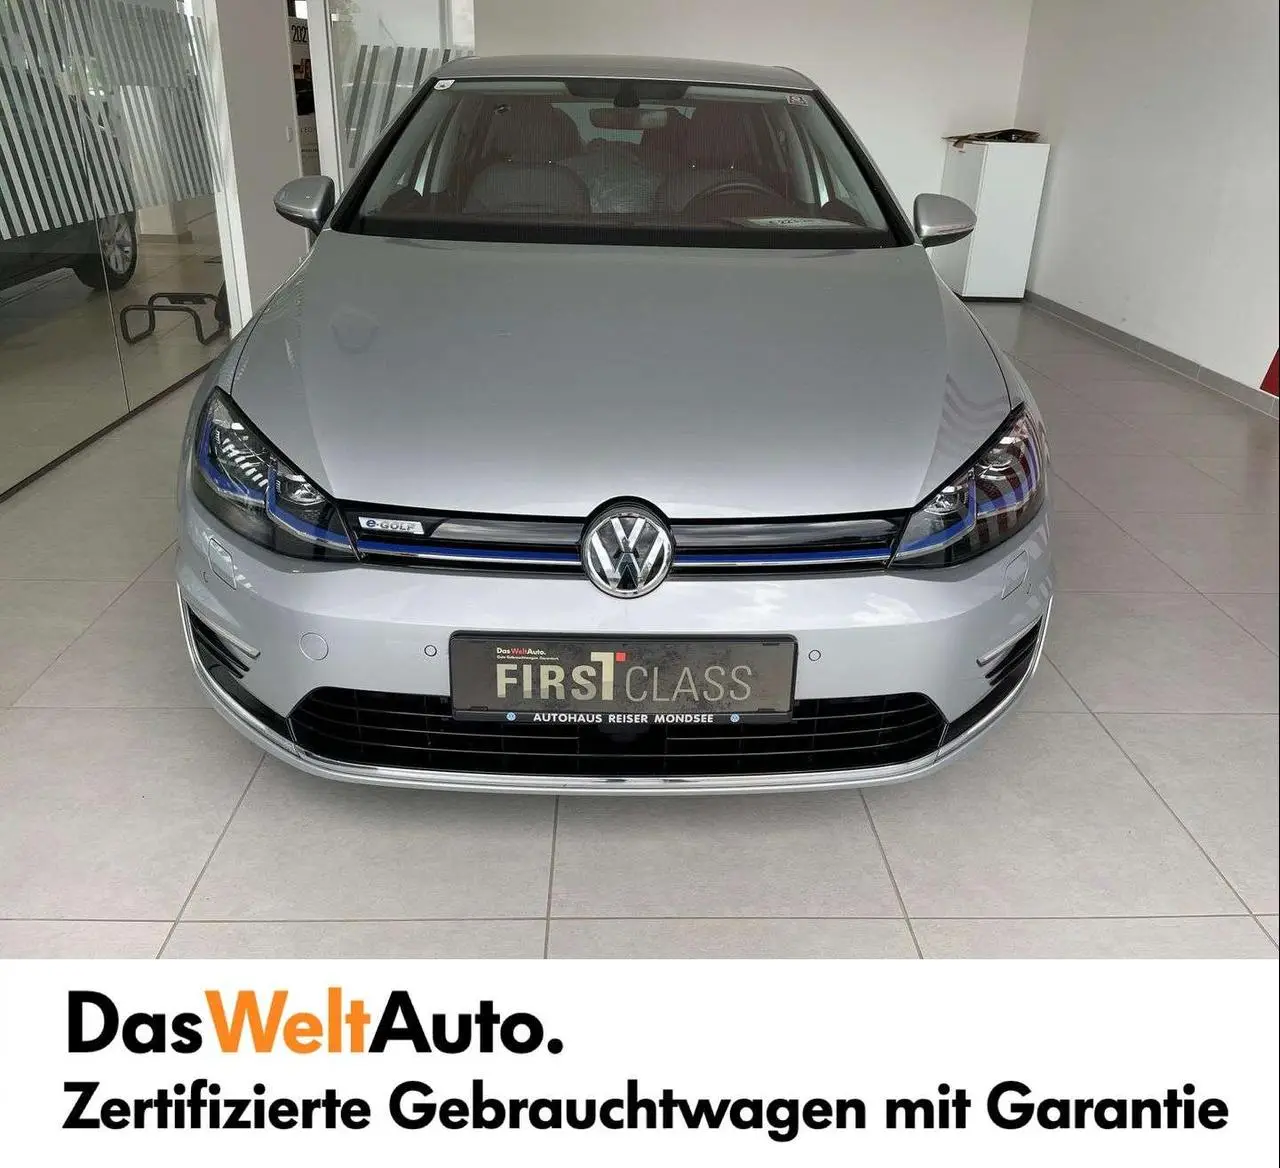 Photo 1 : Volkswagen Golf 2019 Electric